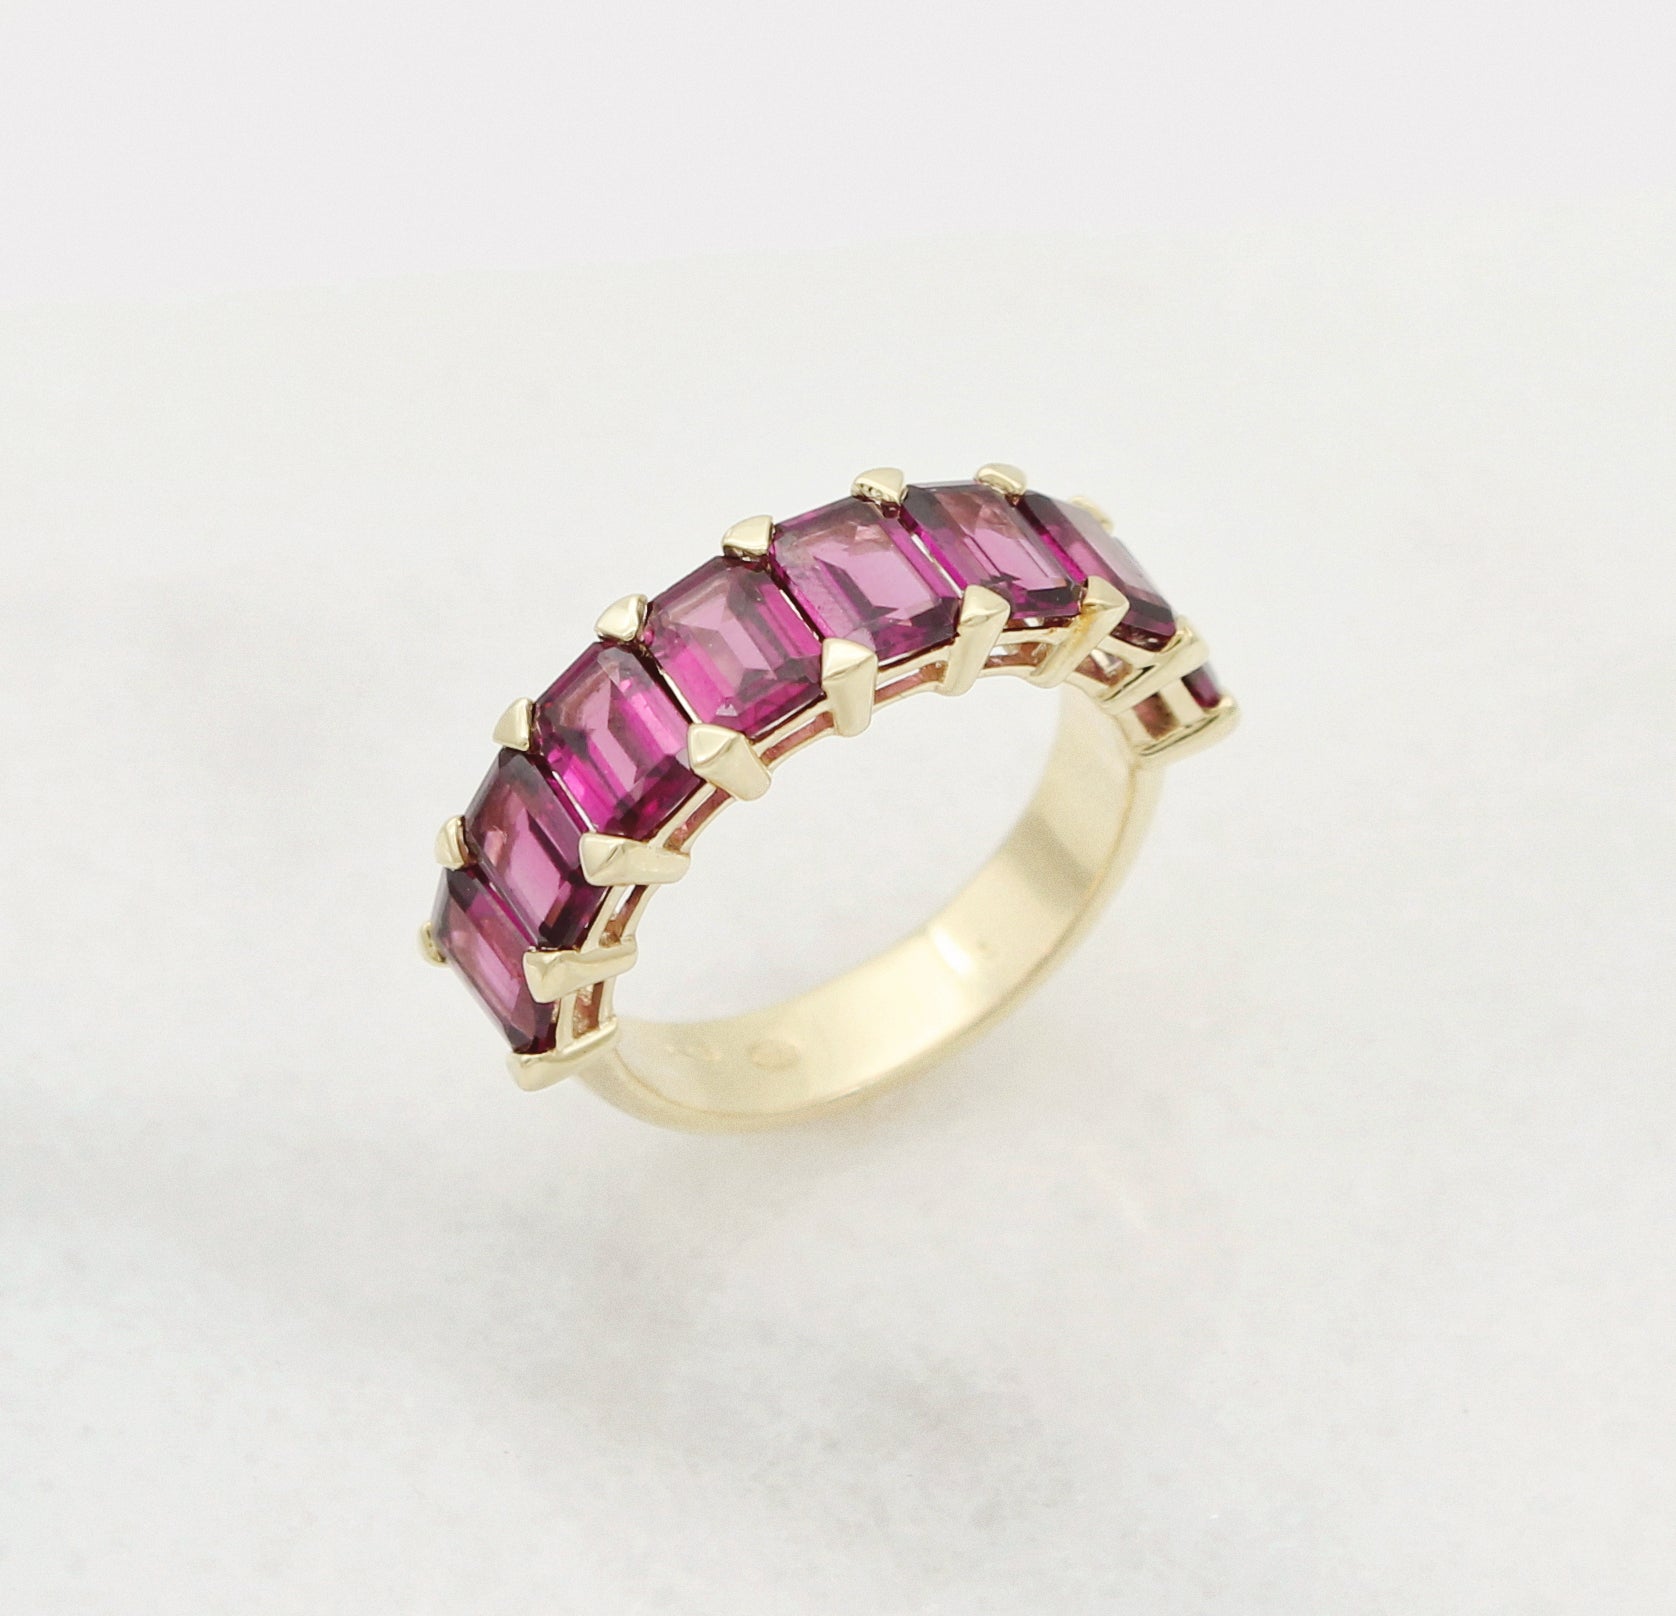 Garnet gemstones set in a custom gold wedding band.